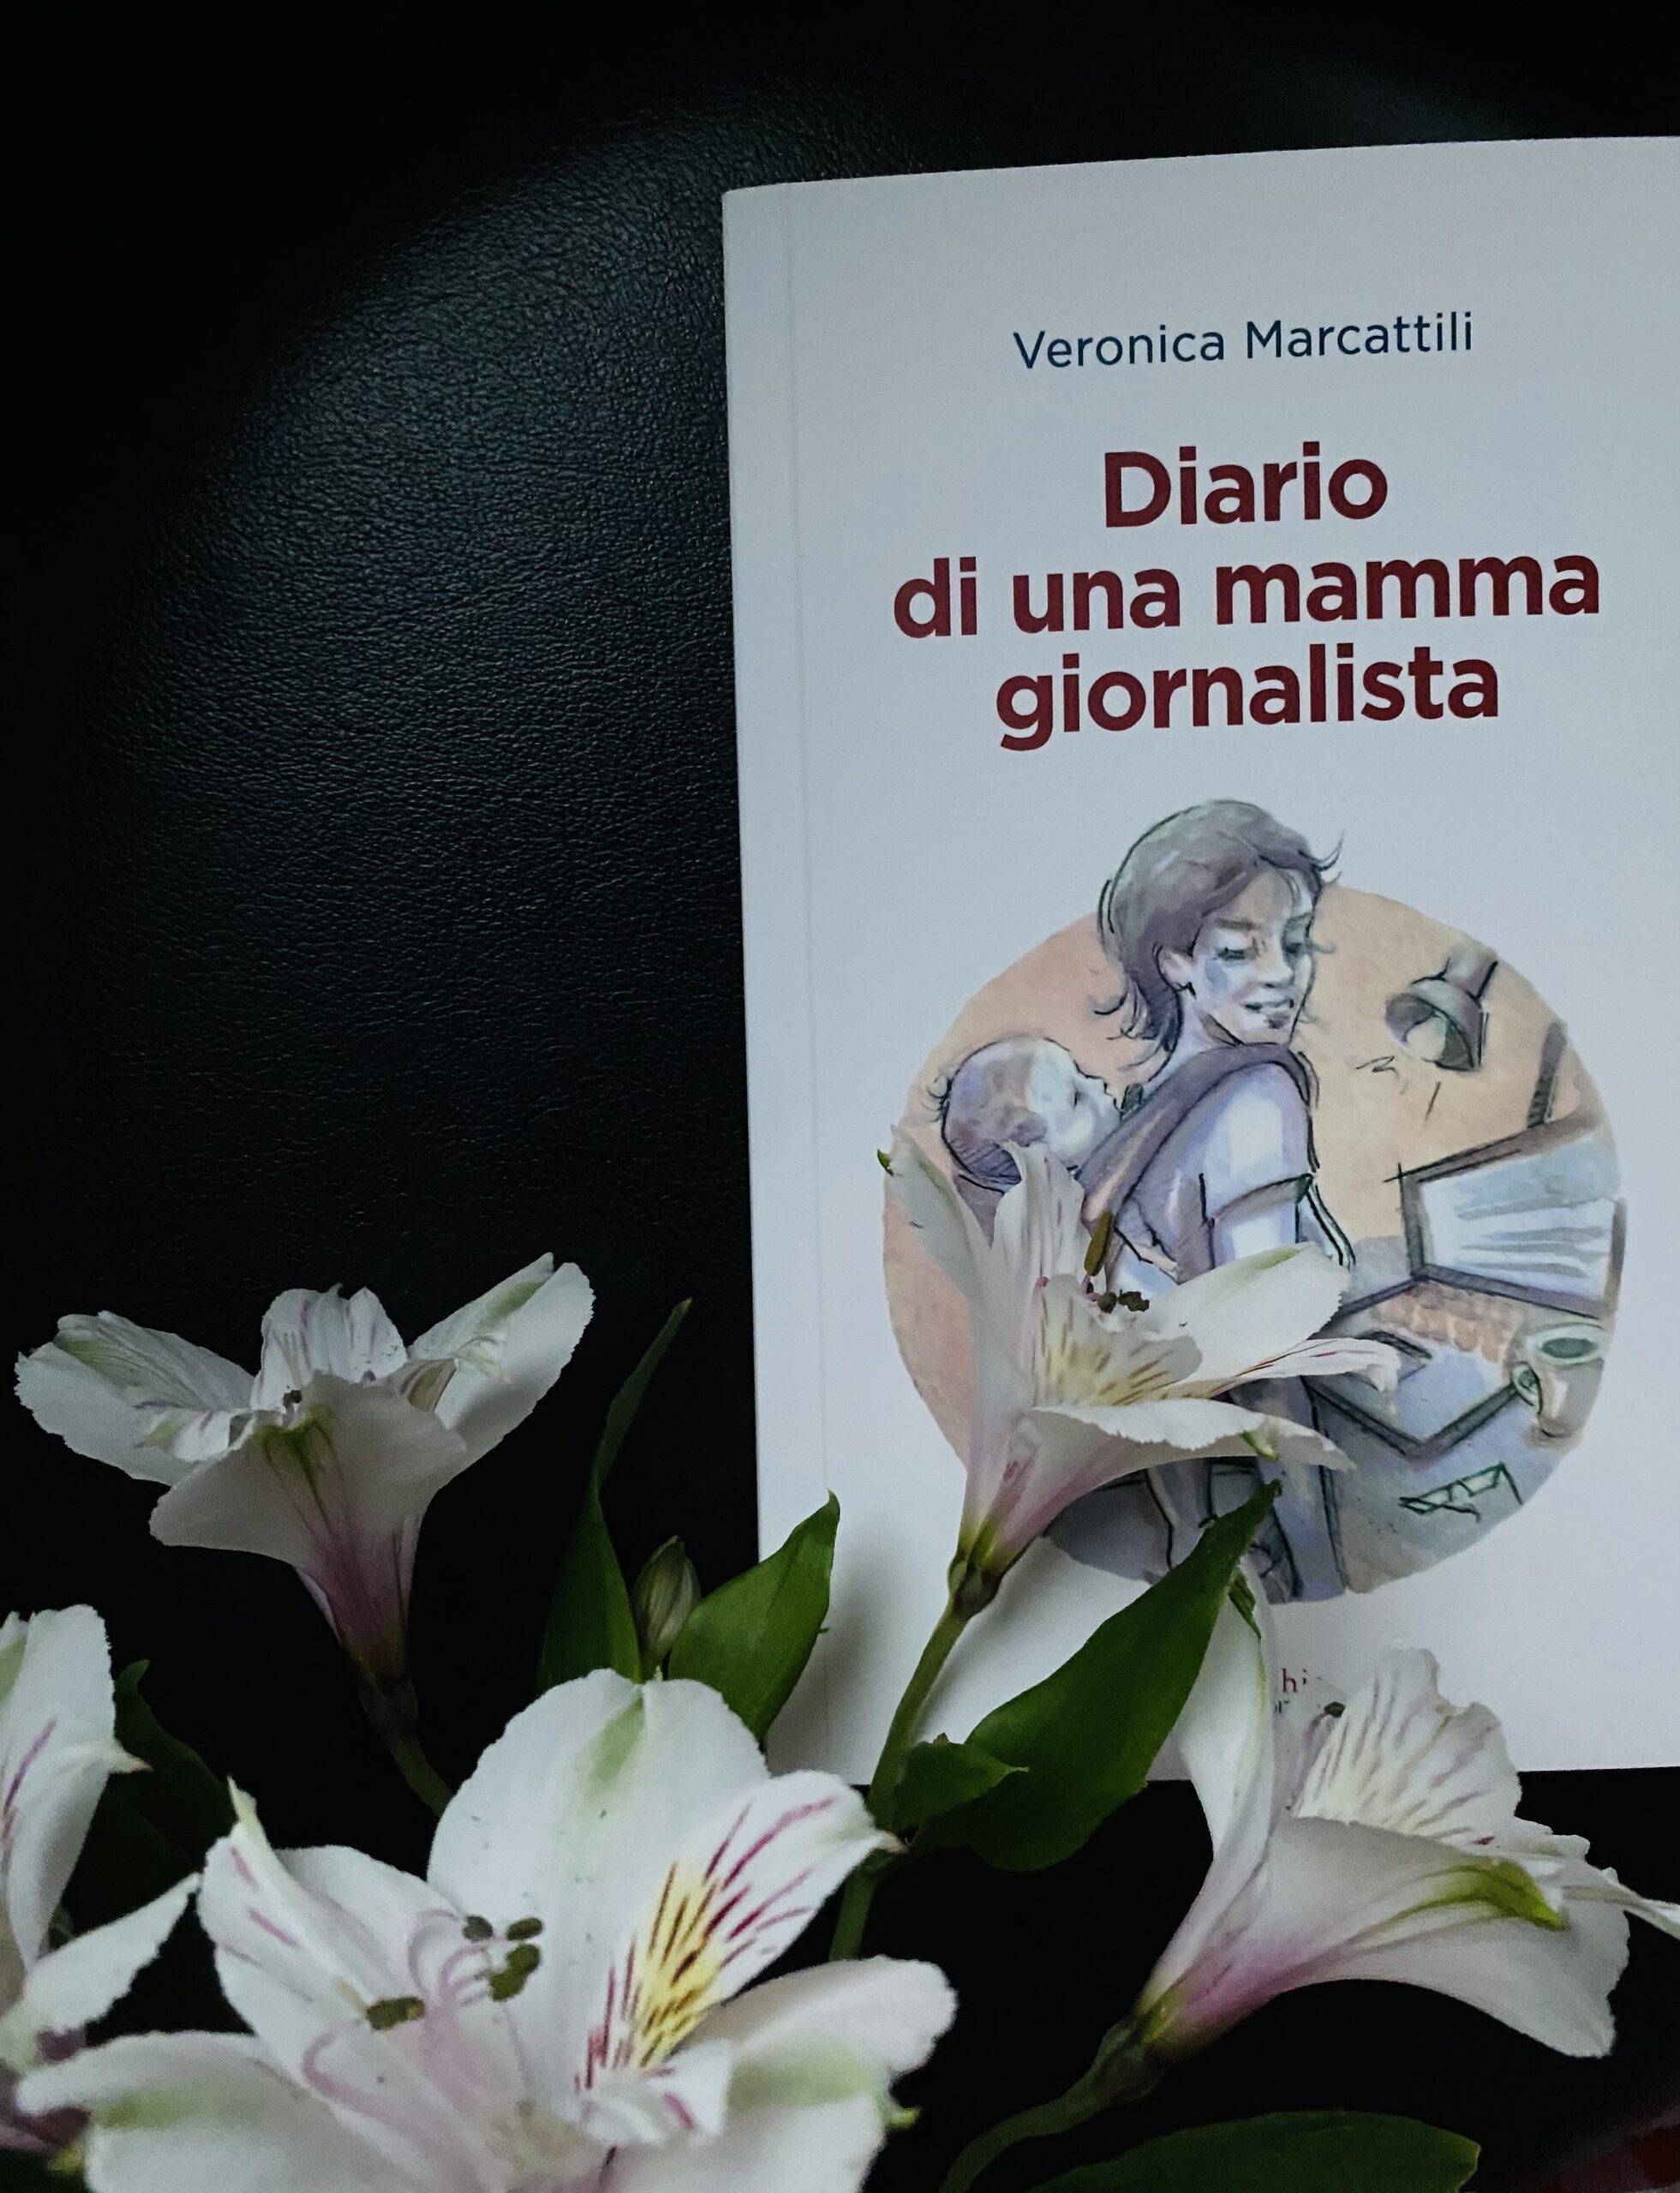 “Diario di una mamma giornalista” – Veronica Marcattili